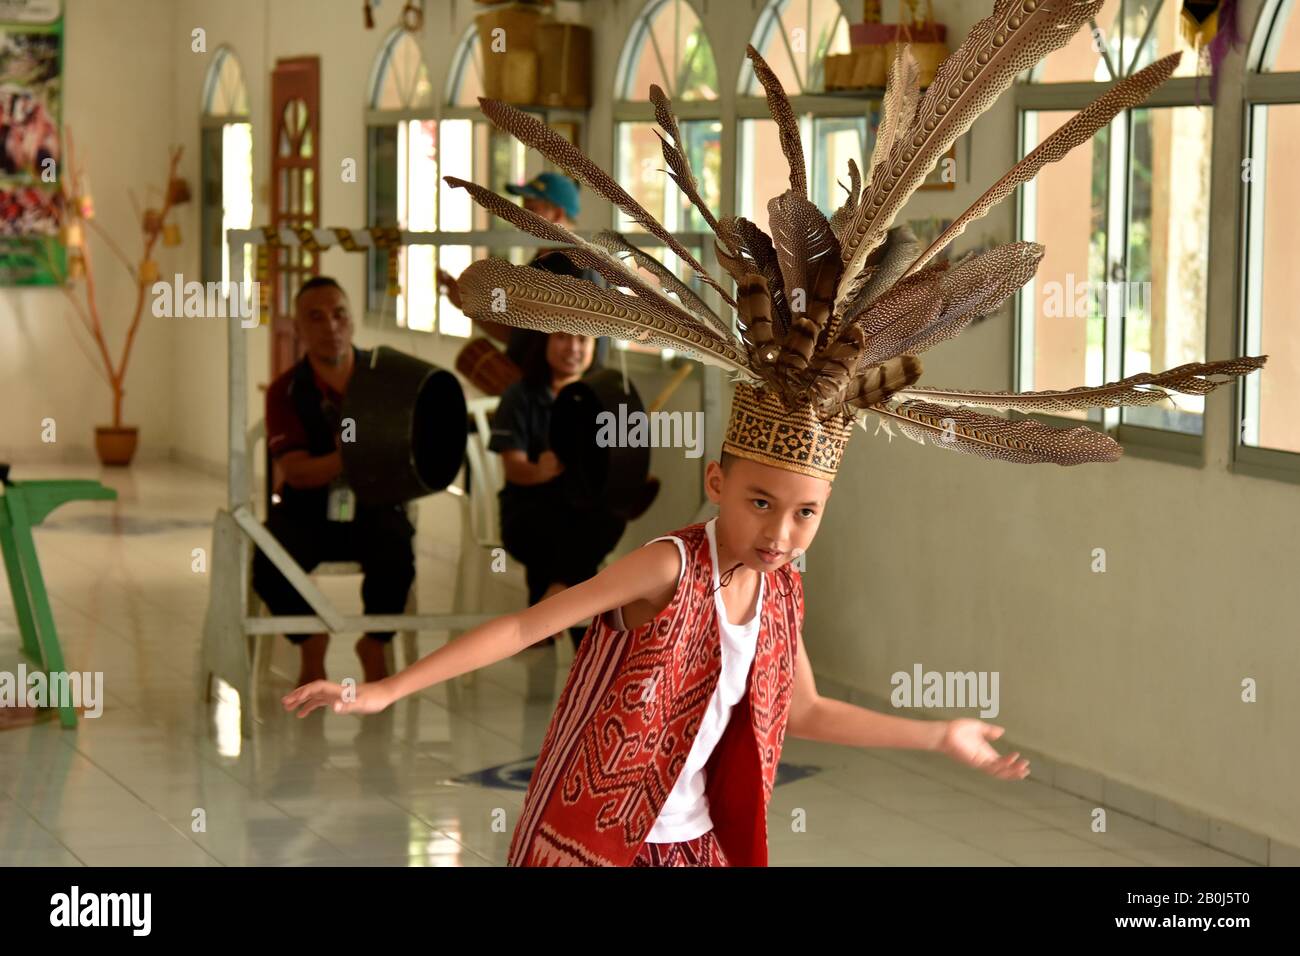 Der Junge präsentiert einen traditionellen Iban-Tanz, der für die indigene Bevölkerung der Gegend von Ulu Temburong, Brunei, typisch ist Stockfoto